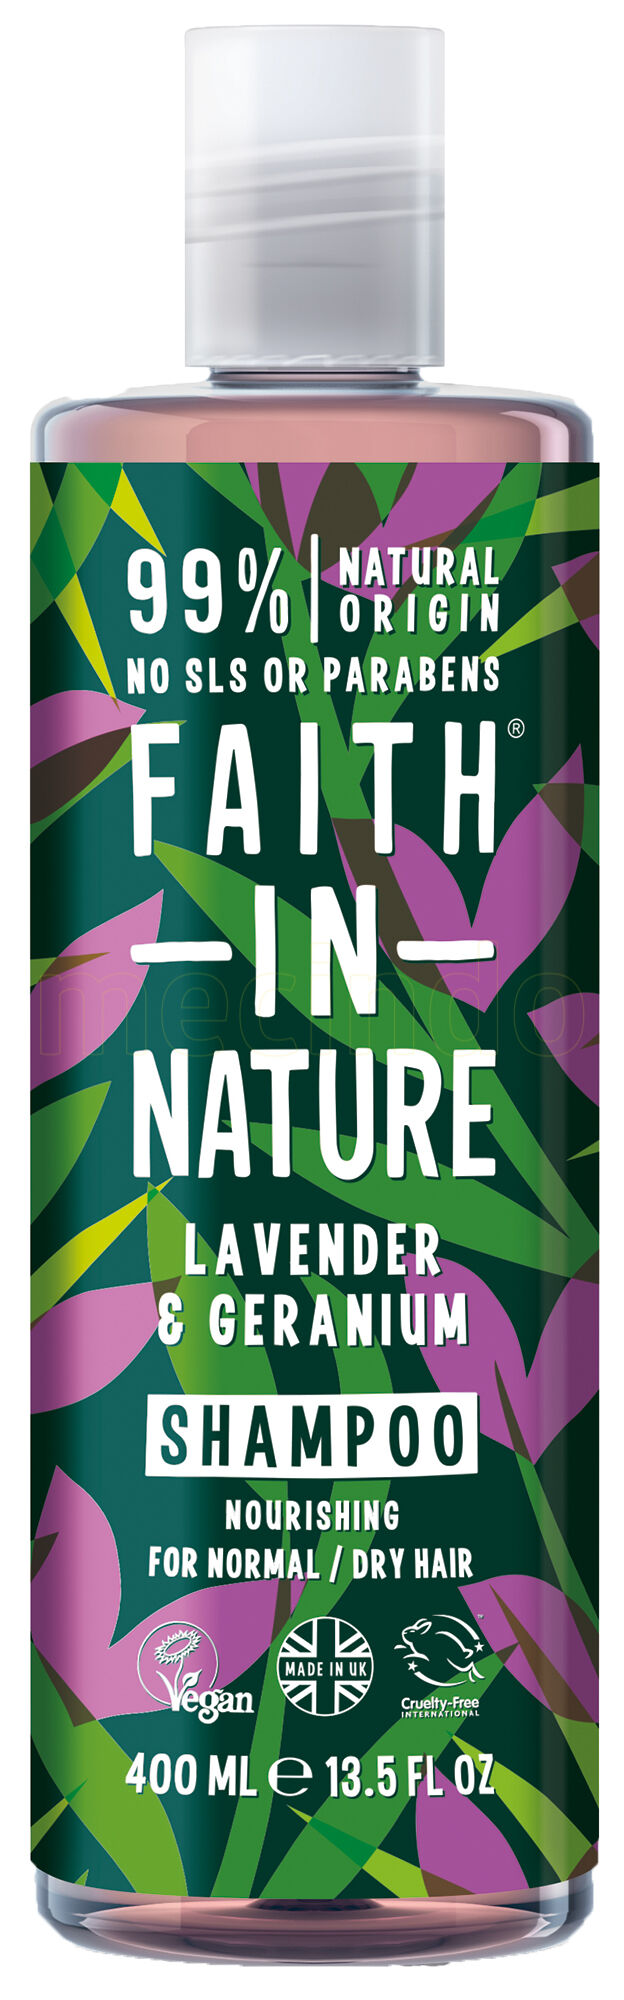 Faith in Nature Shampoo Lavendel & Geranium - 400 ml